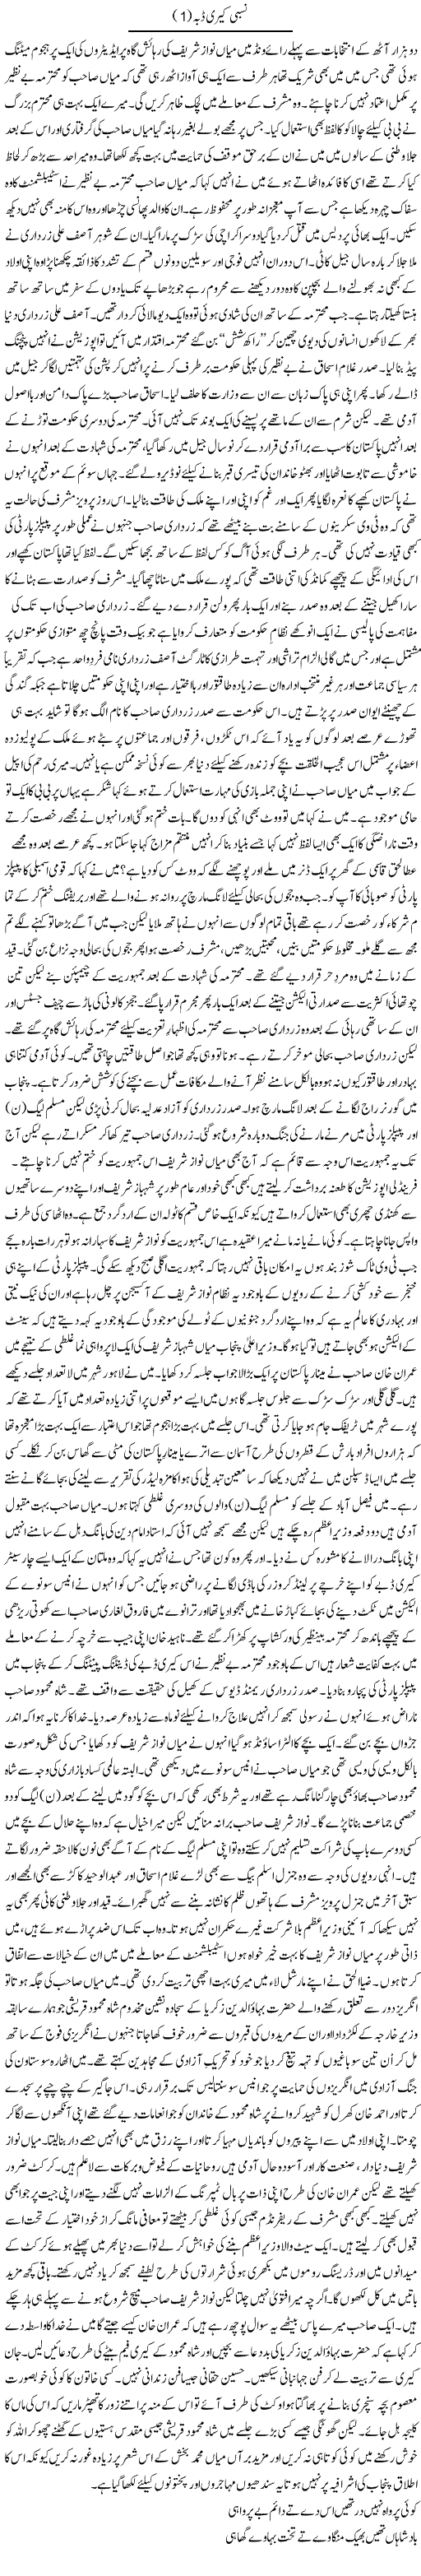 Pakistani Politicians Express Column Abbas Athar 28 November 2011